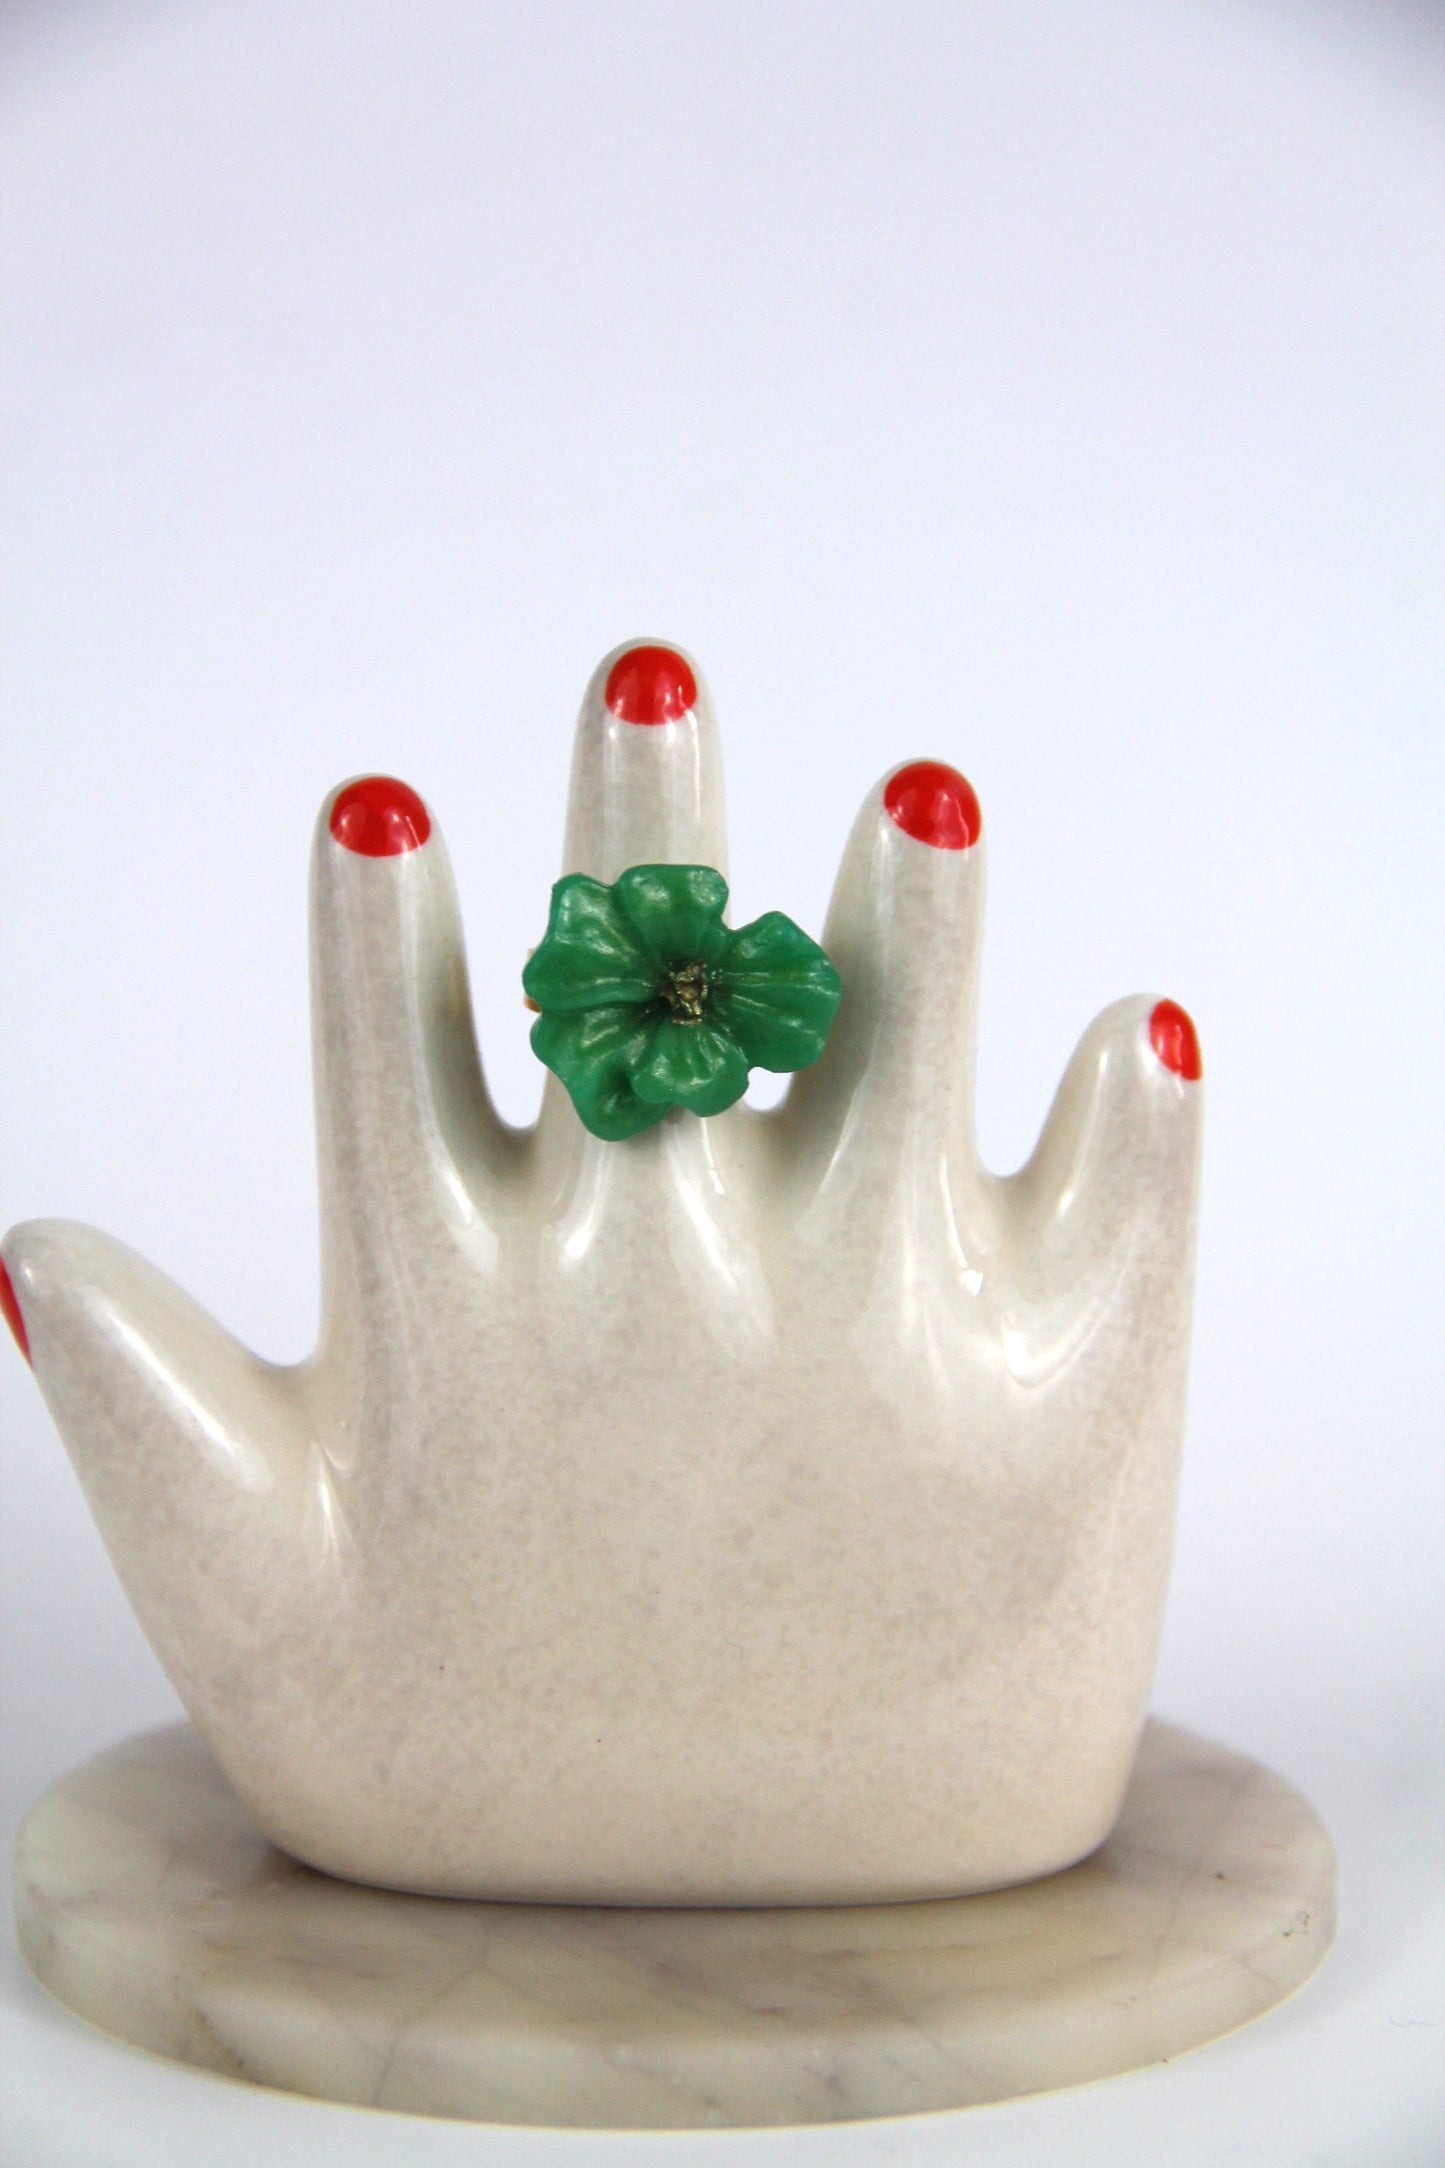 Flower Power ring - Buttercup - Jade green